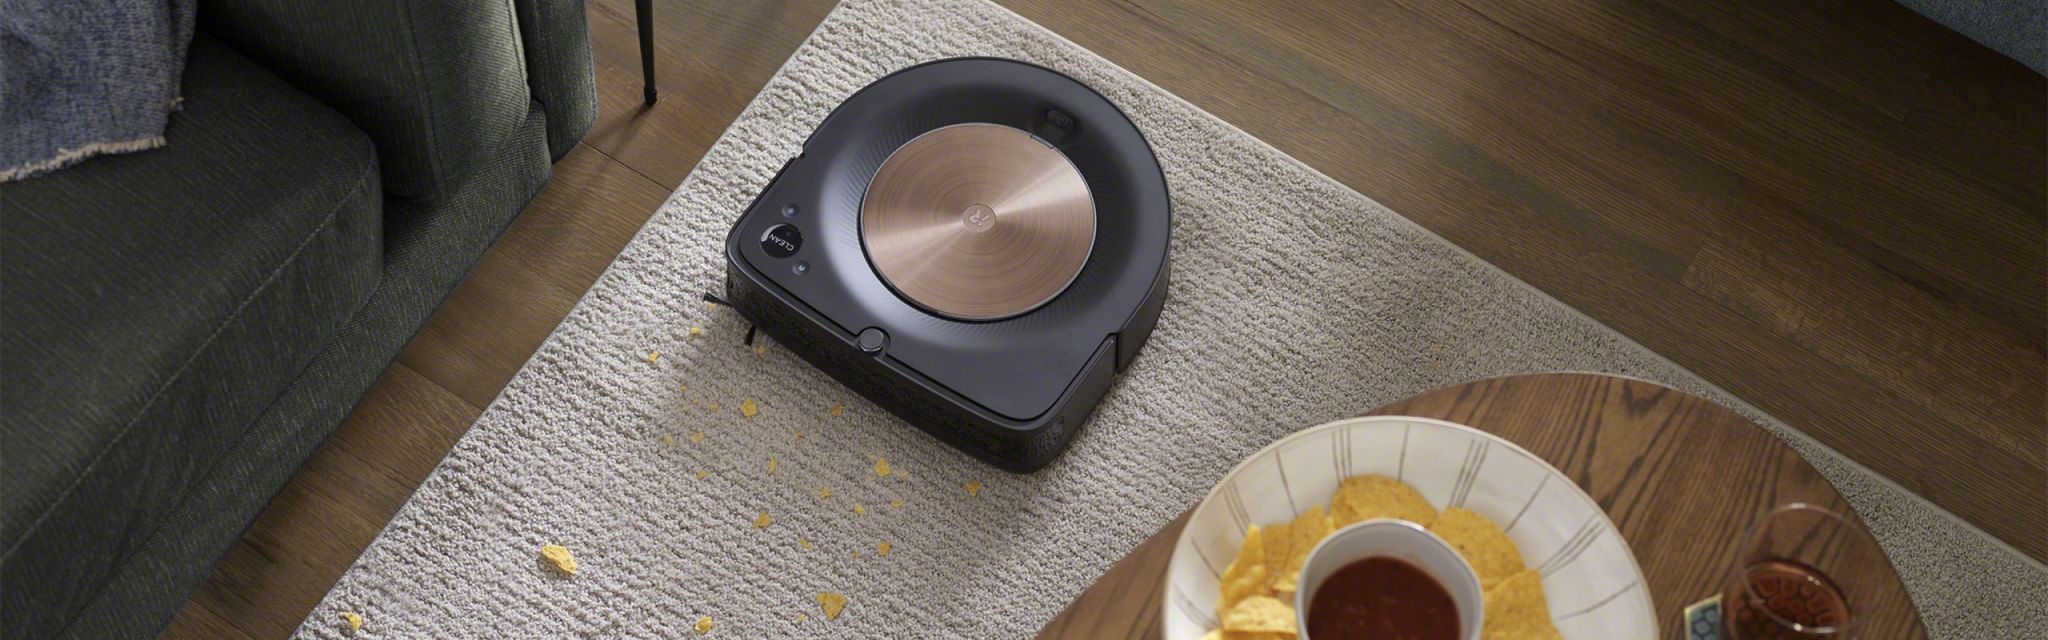 Roboty sprzątające iRobot Roomba - więcej niż odkurzacz